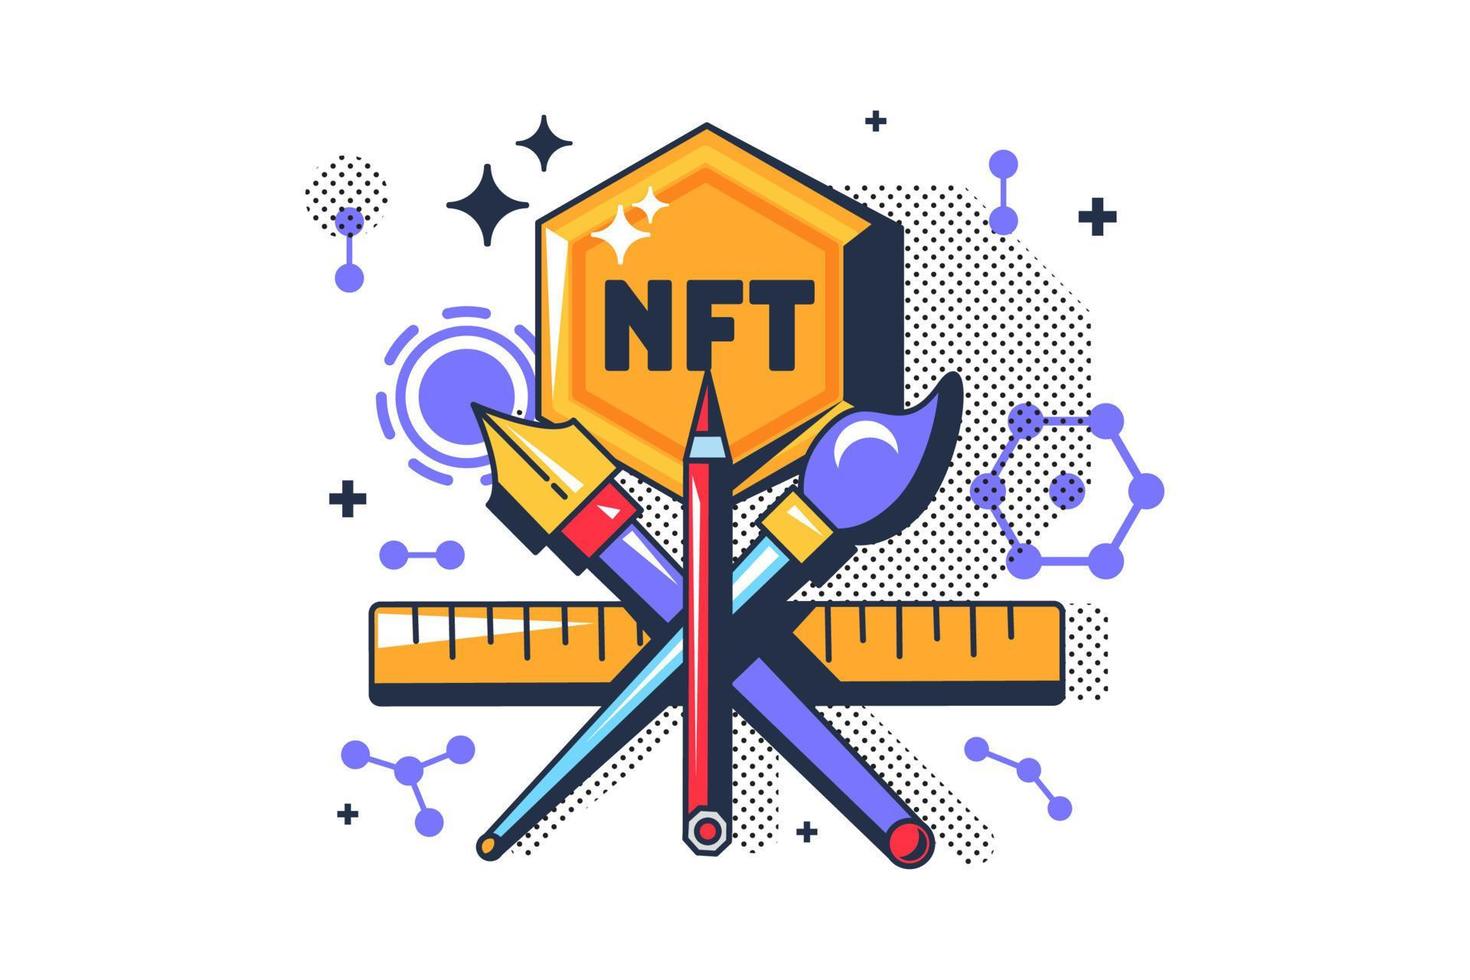 Cool nft tart digital cryptocurrency token vector